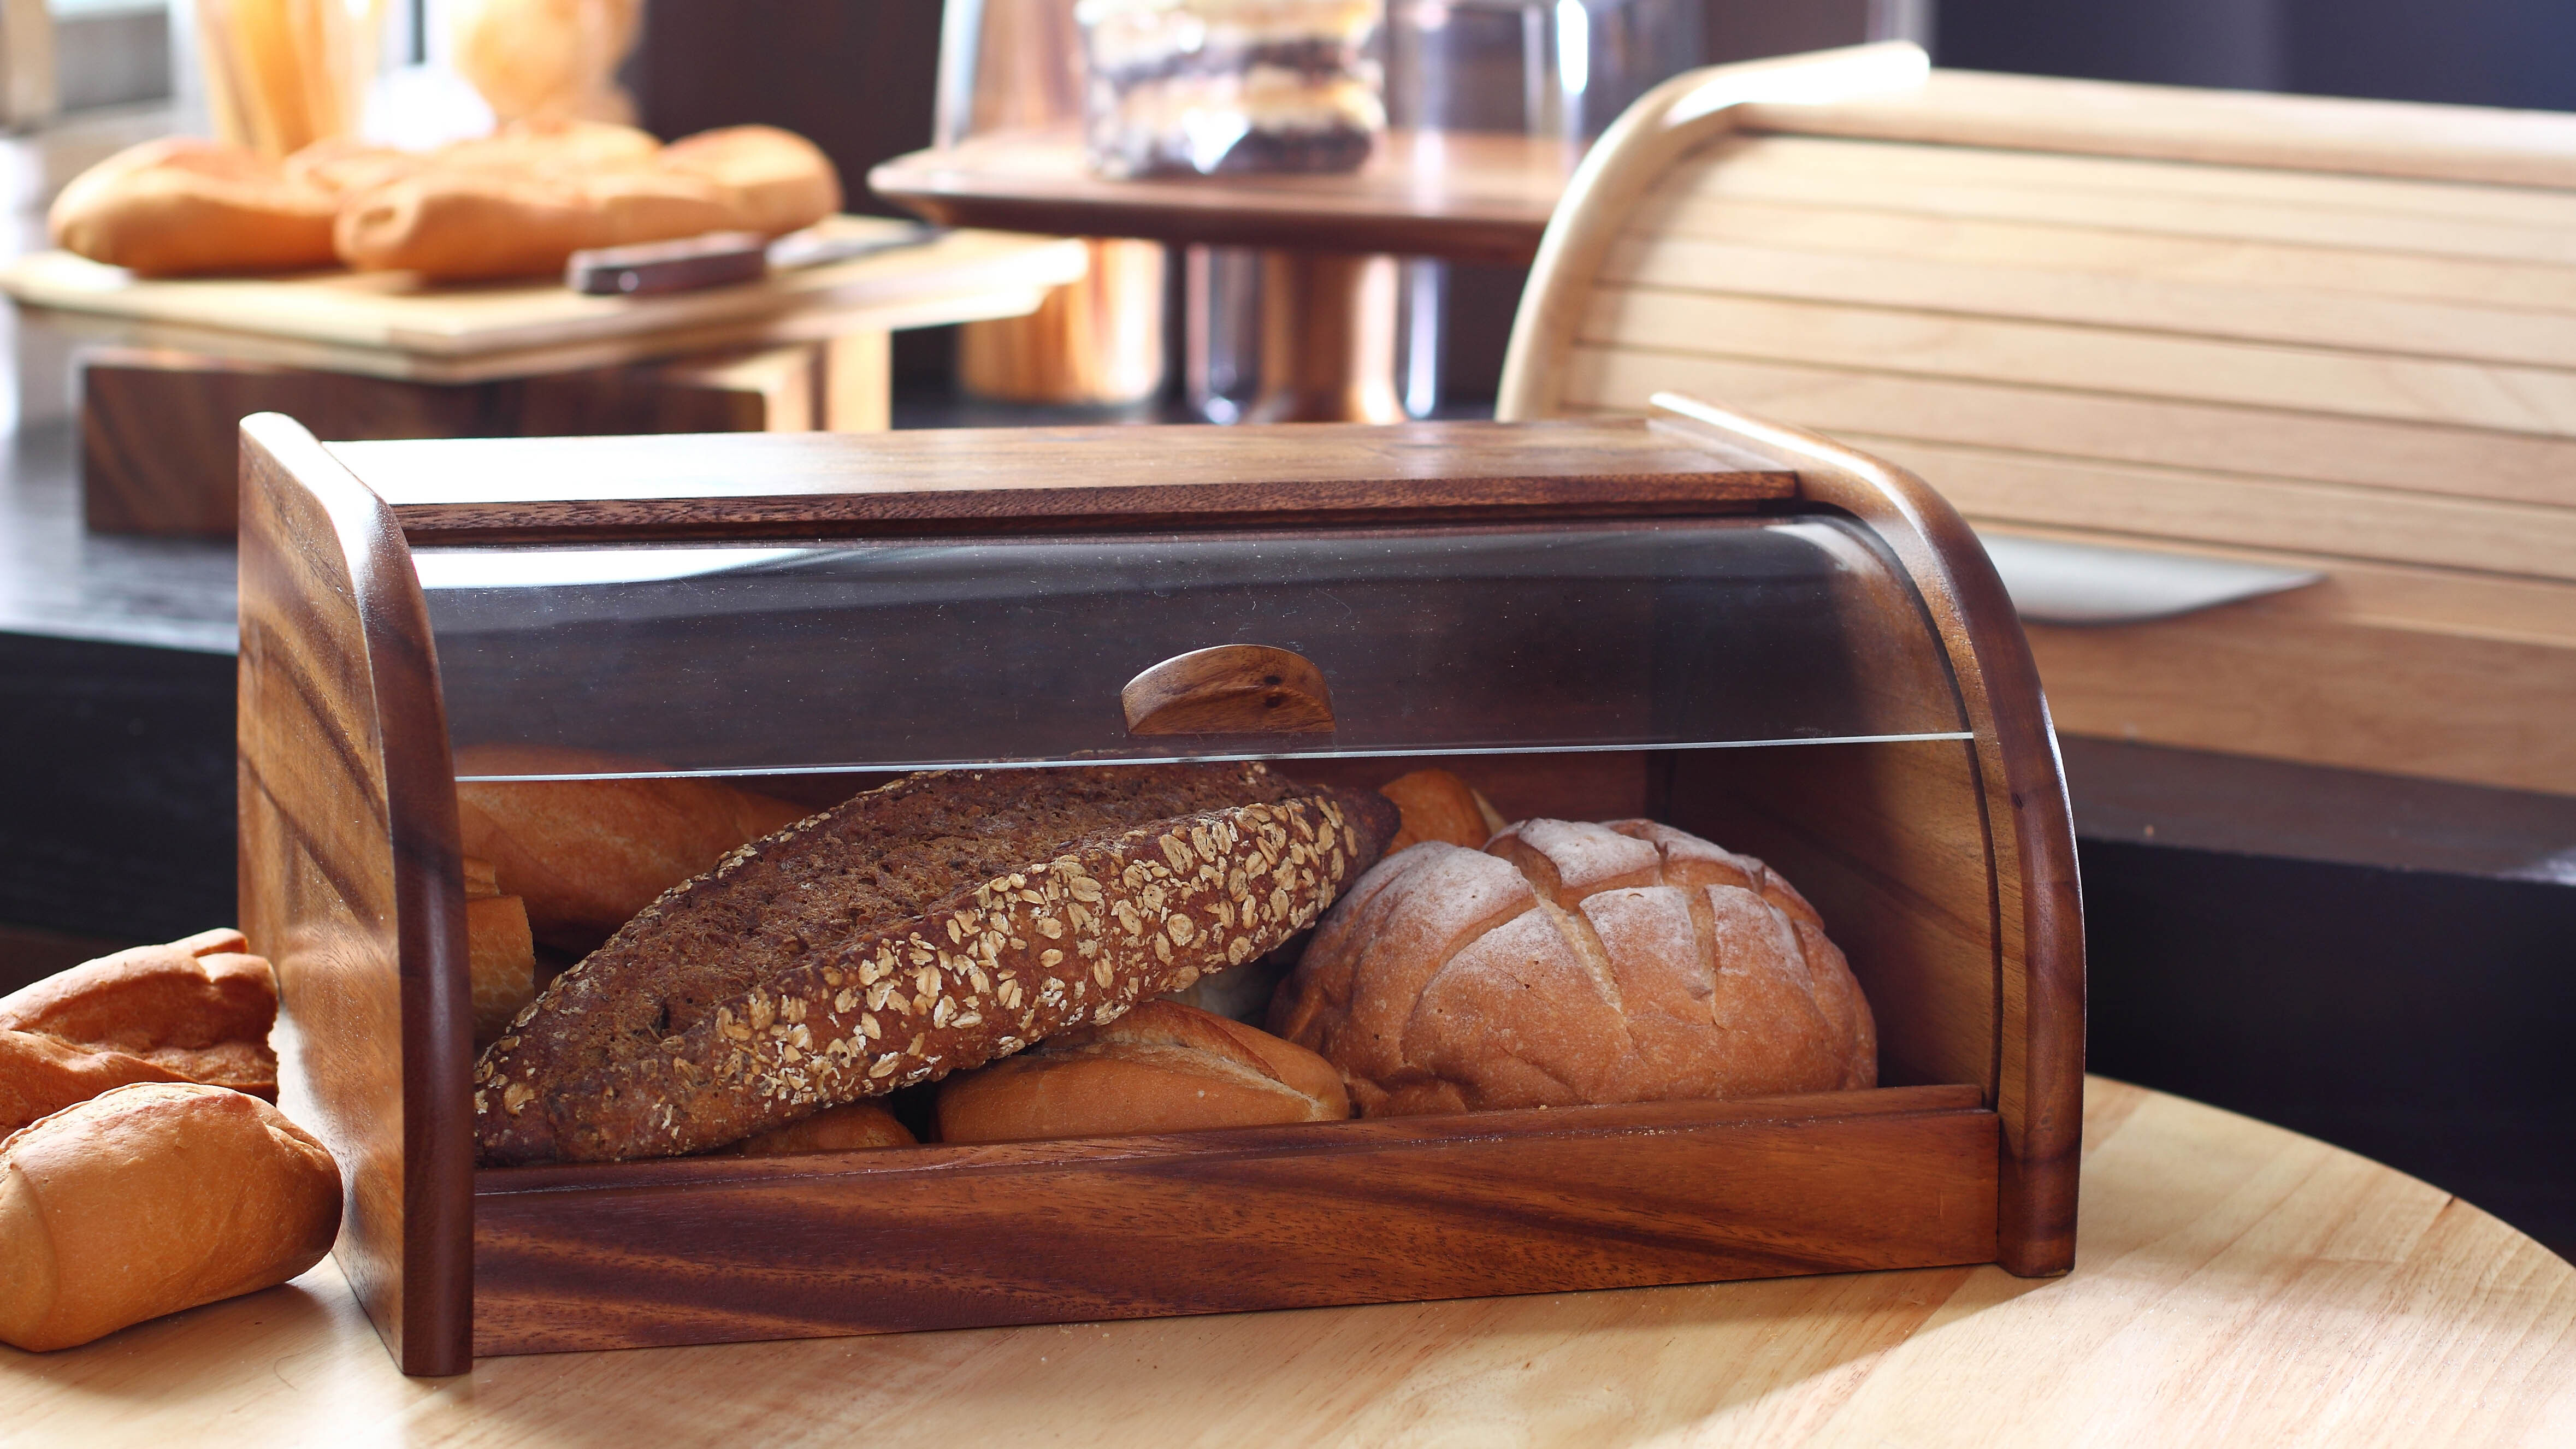 Разнообразие буханок хлеба в хлебнице